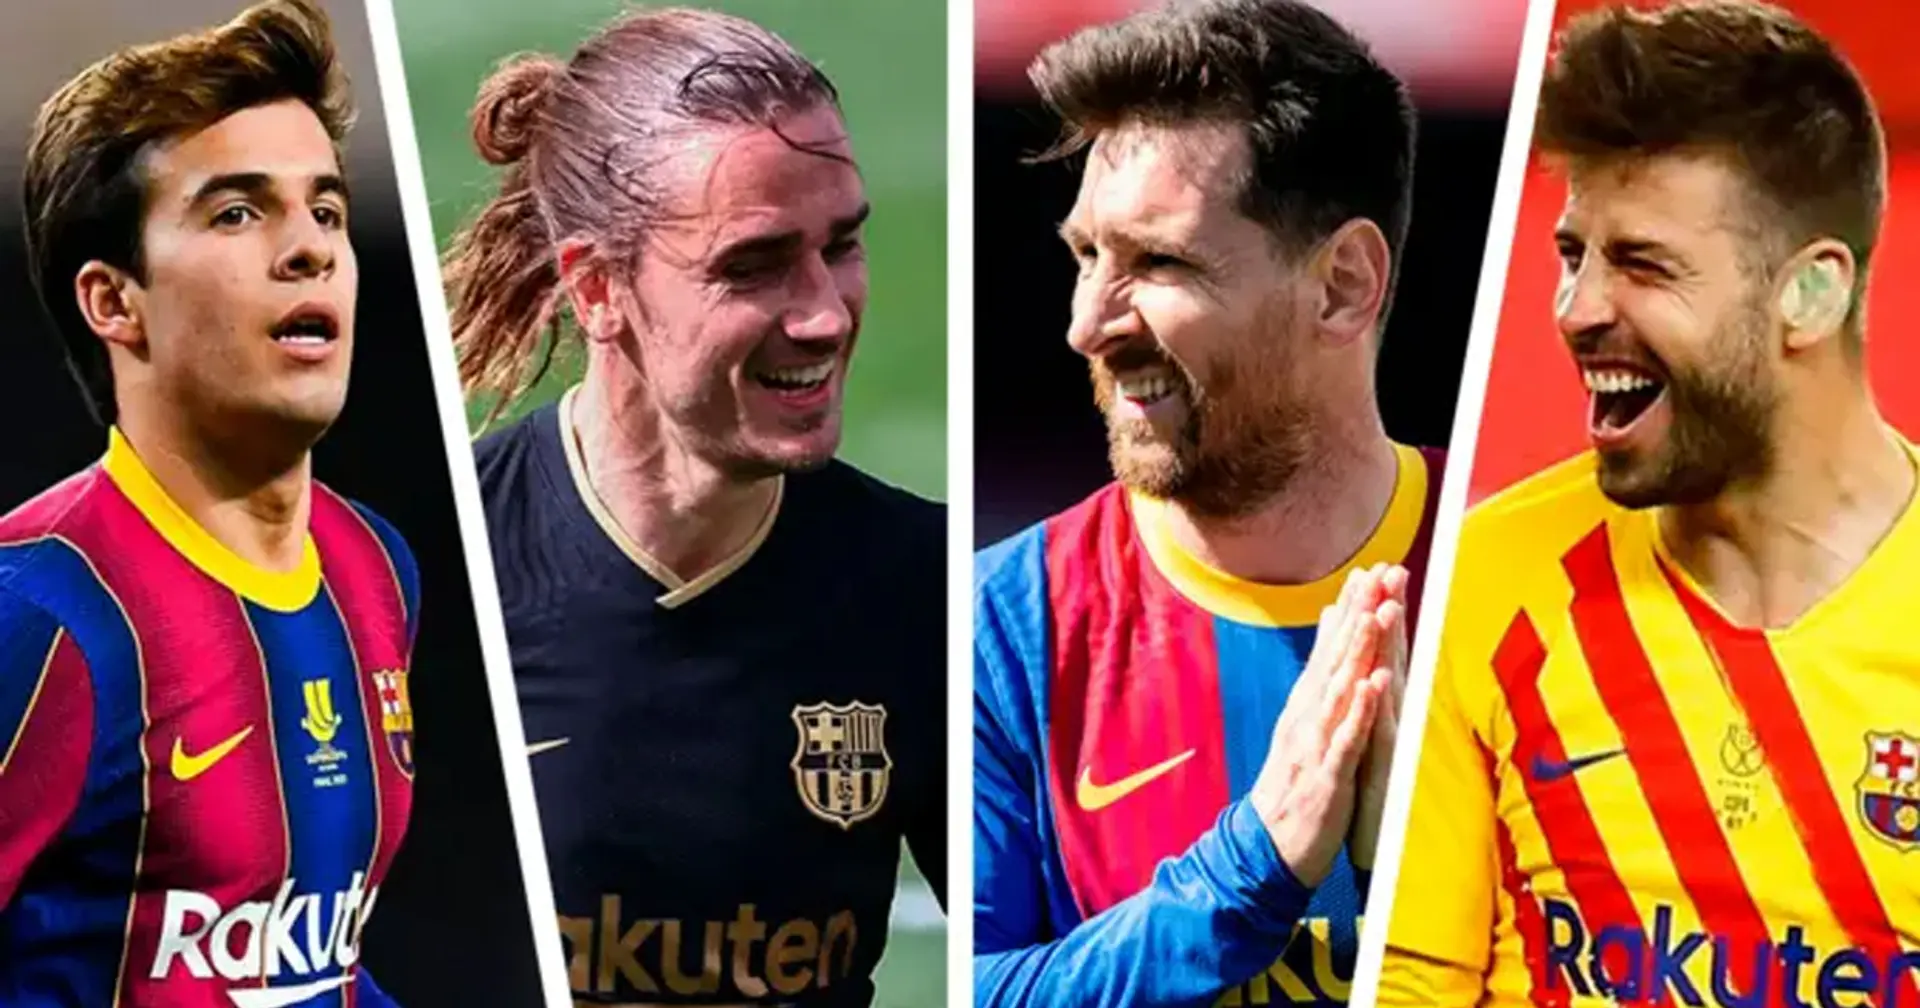 Messi 2°, Puig fuera del top 20: la clasificación de los jugadores del Barça por cláusulas de rescisión